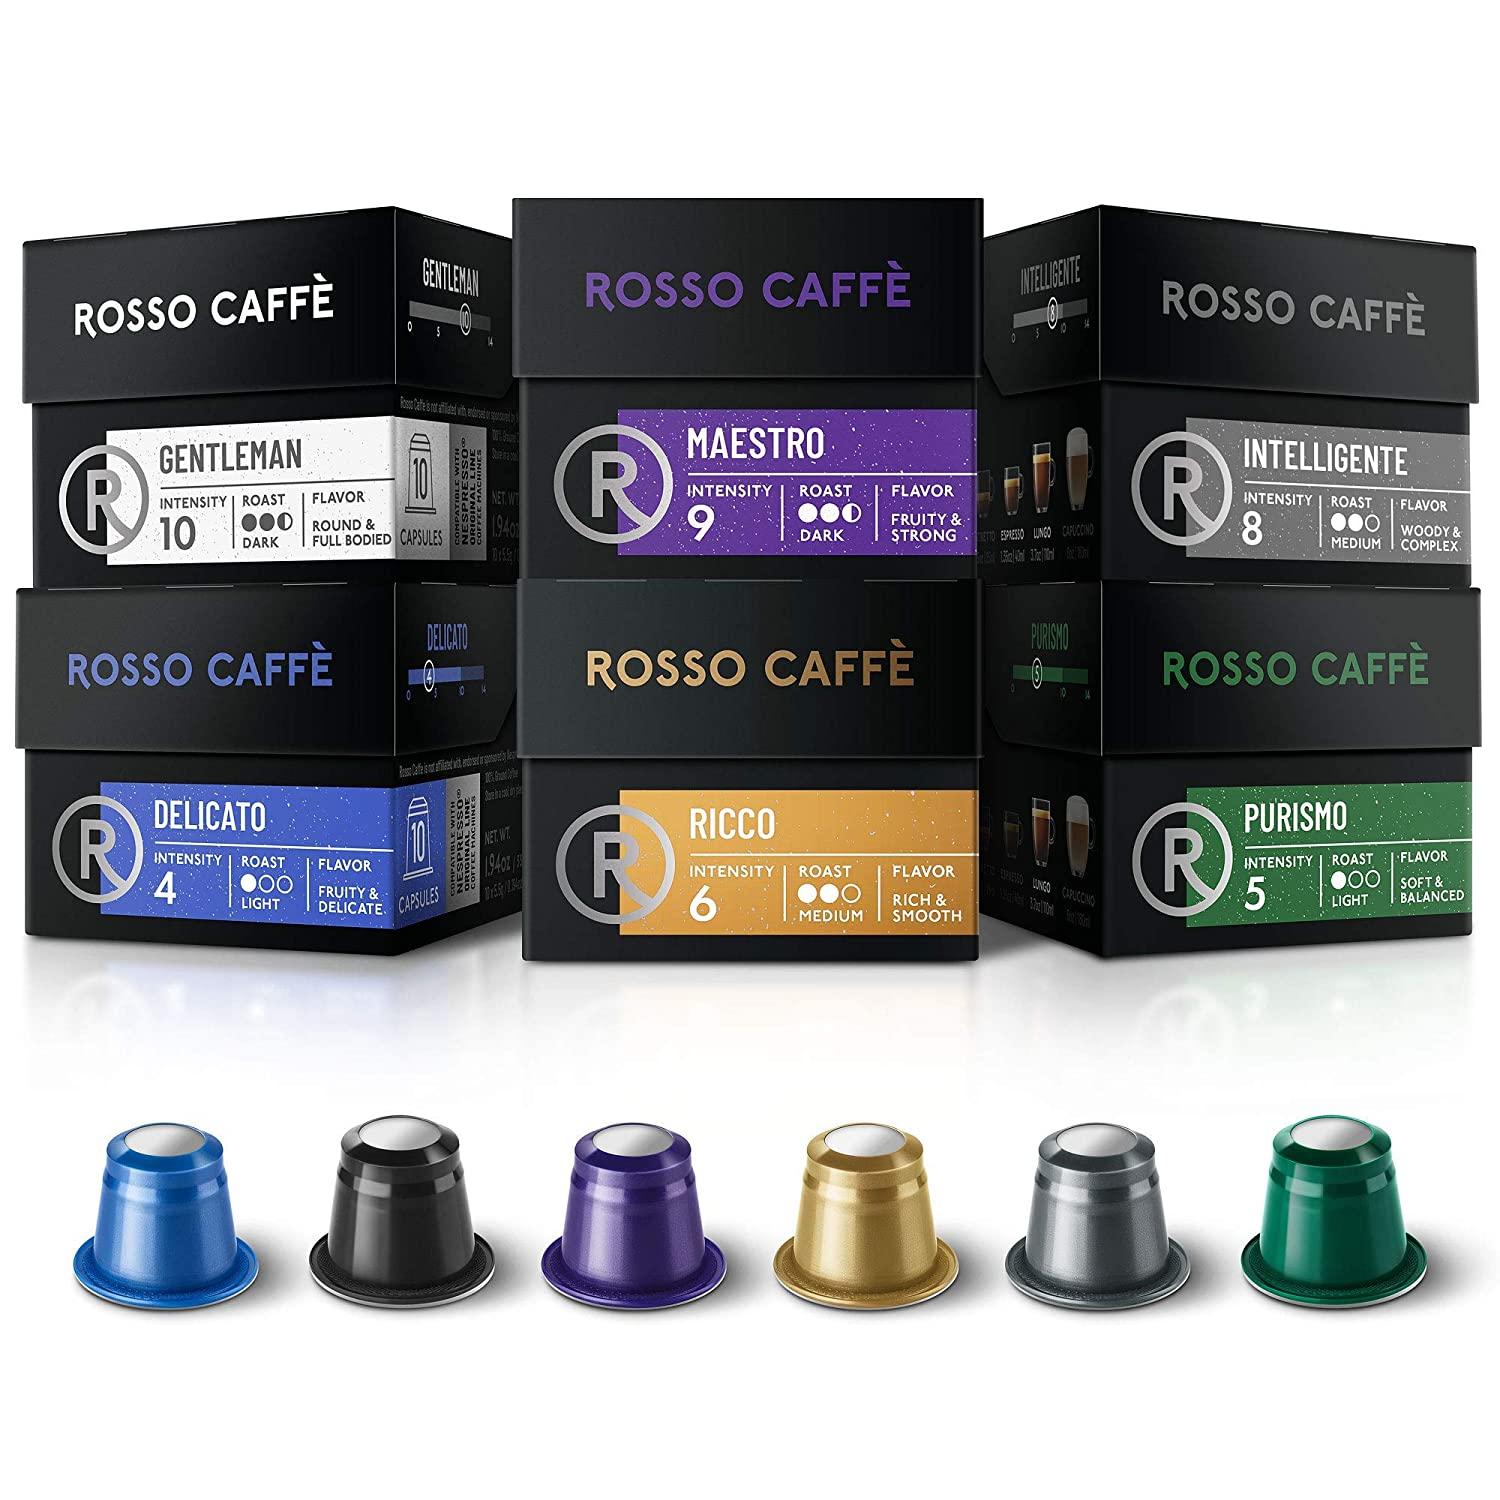 60 Rosso Espresso Coffee Nespresso Pods for $15.37 Shipped